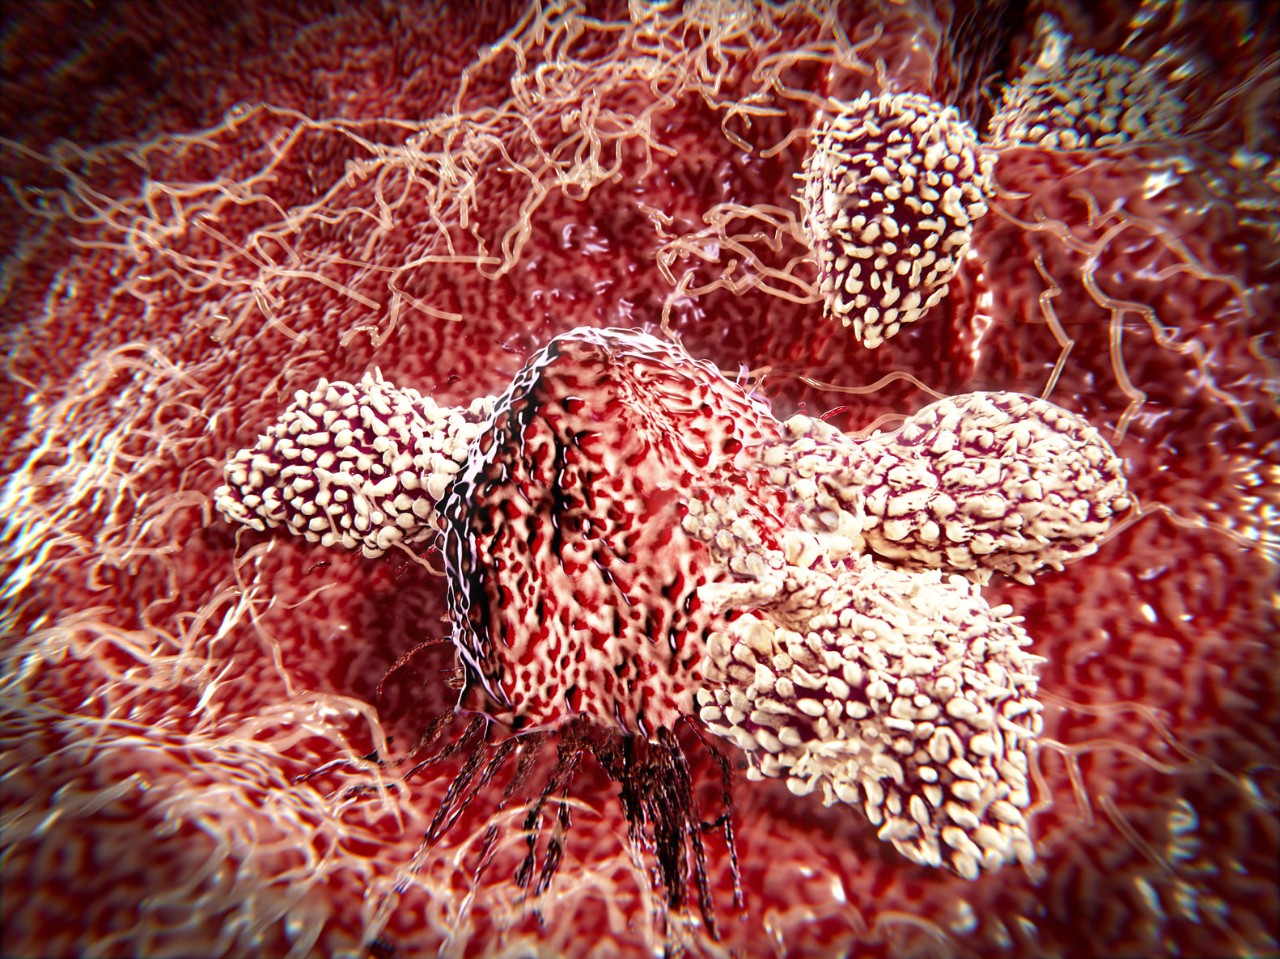 Natürliche Killerzellen (NK) erhielten ihren Titel als „Killer“ erstmals vor fast 40 Jahren, als Forscher die schnelle Immunantwort dieser Lymphozyten bei der Zerstörung von Wirtszellen, die mit einem Virus oder Tumorzellen infiziert waren, beobachteten. Es schien so, als könnten sich NK-Zellen spontan und ohne vorherige Aktivierung zusammenschließen.